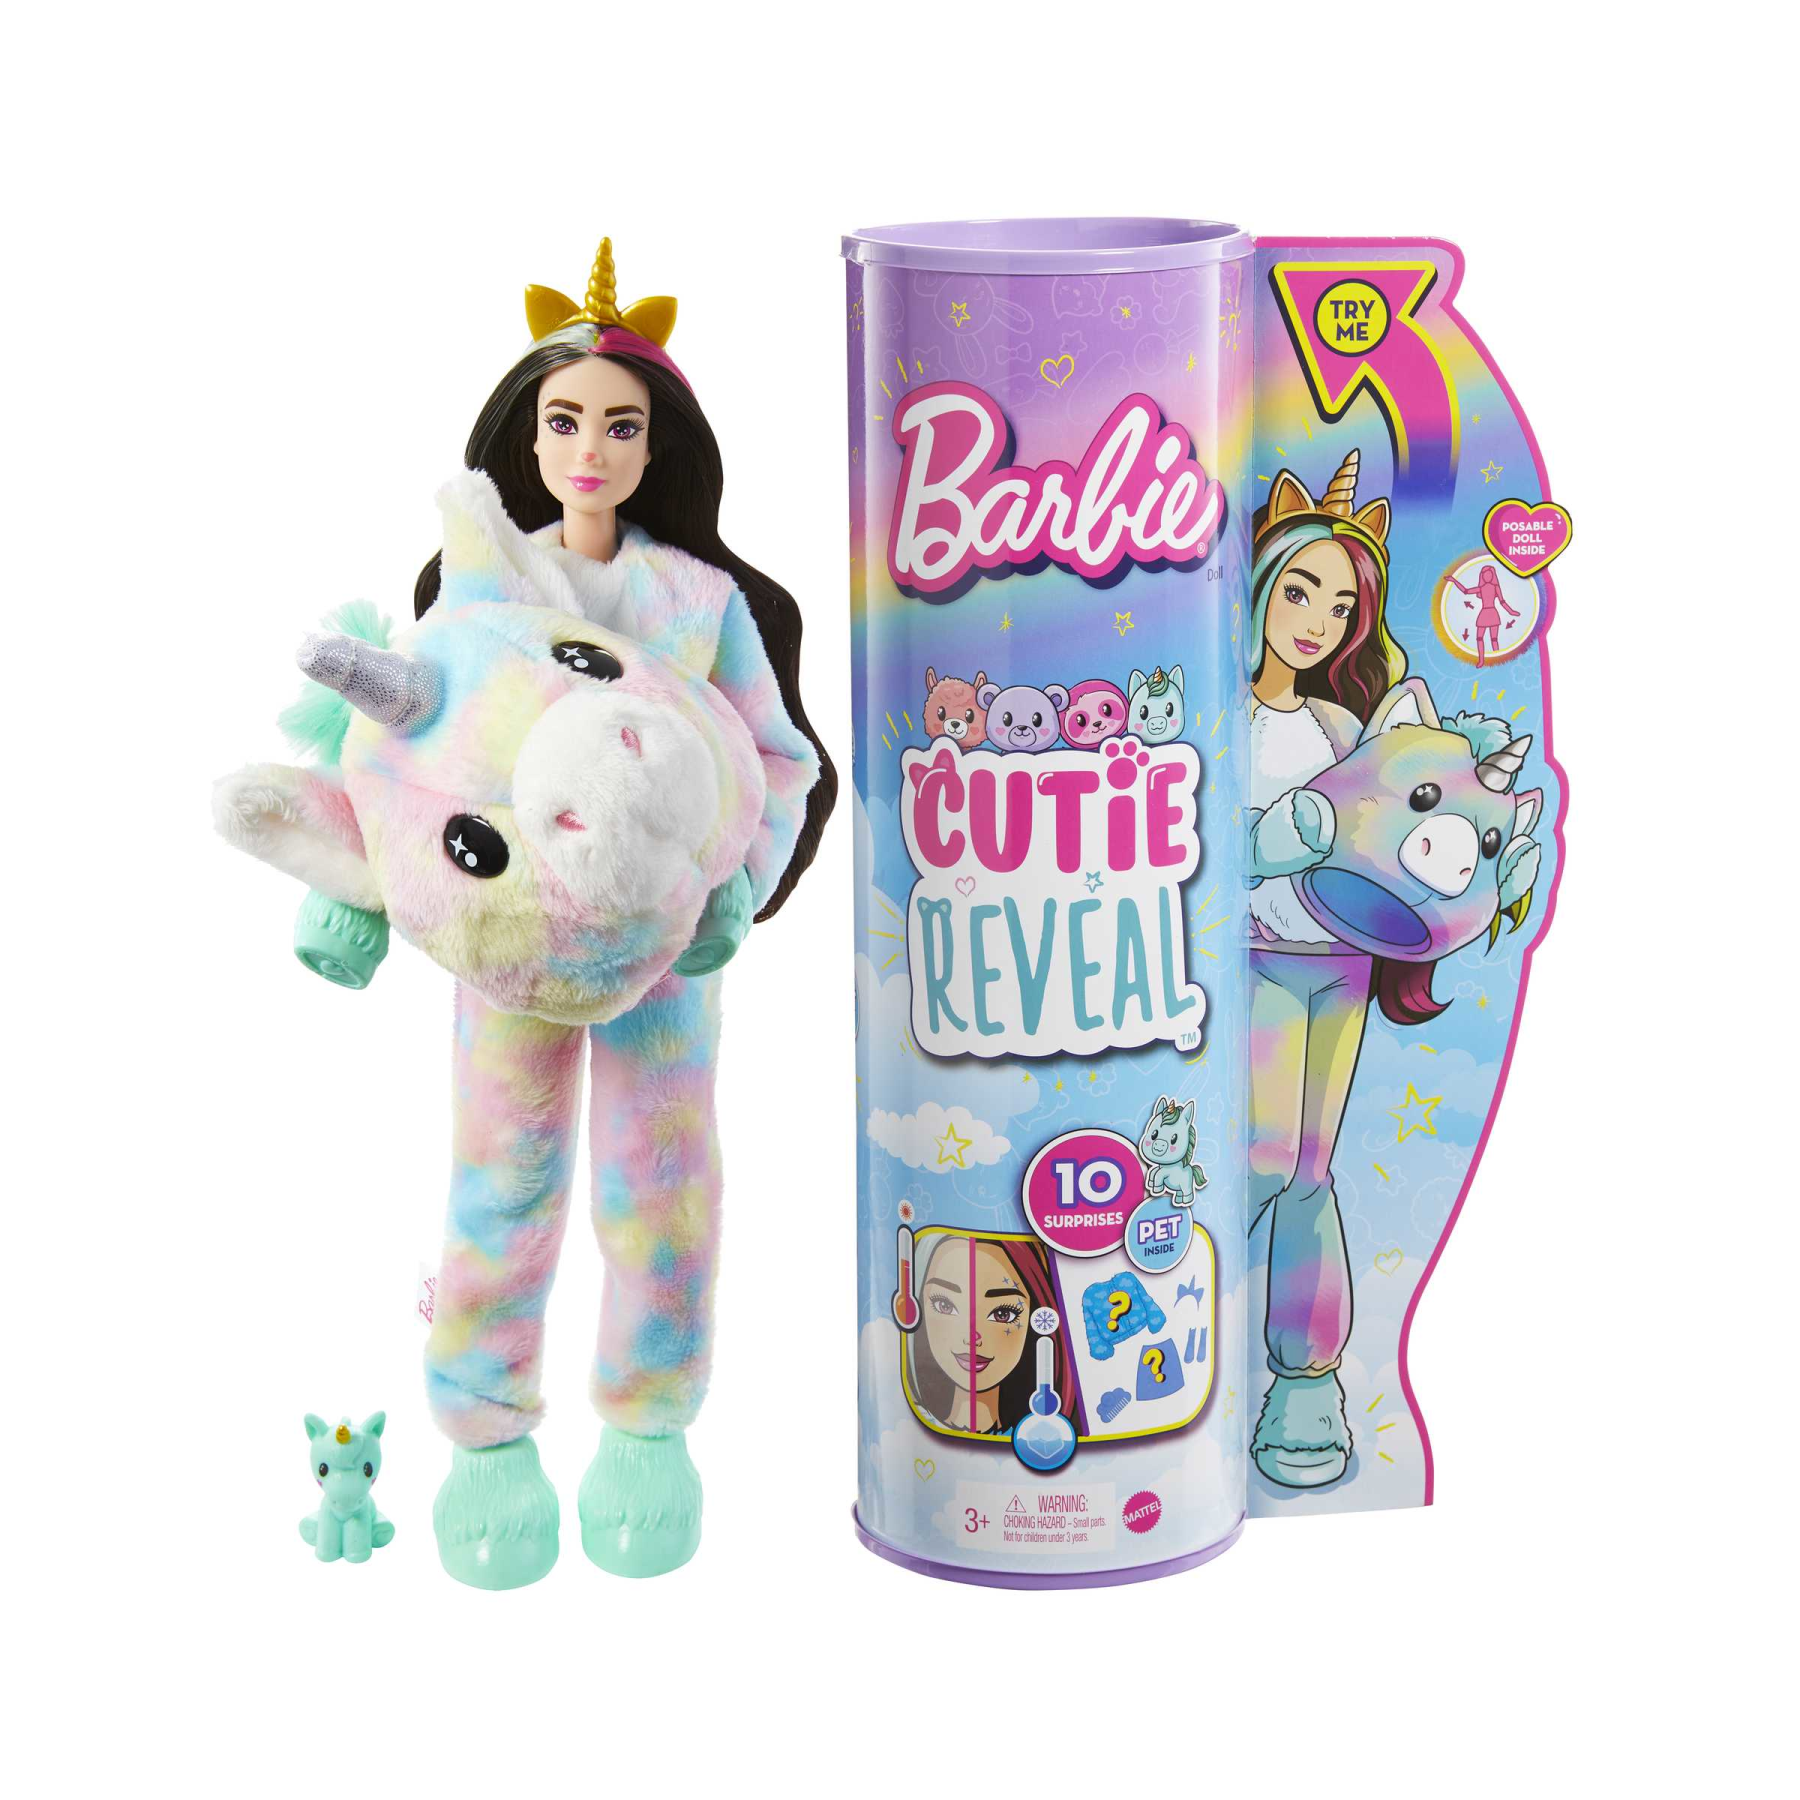 Barbie cutie reveal, bambola con costume da unicorno e 10 sorprese, con cucciolo effetto cambia colore, giocattolo per bambini 3+ anni - Barbie